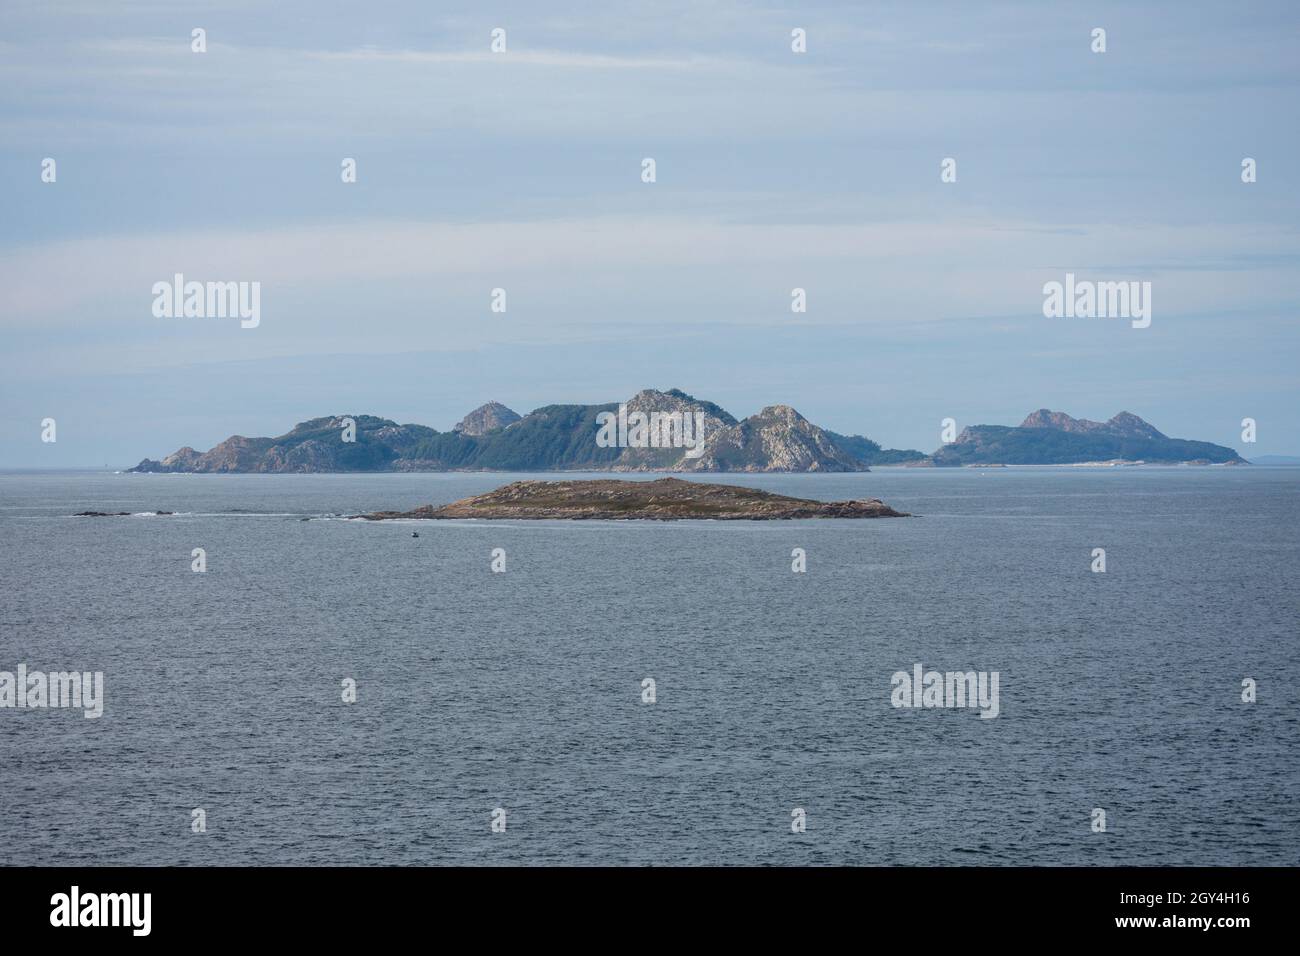 Cíes-Inseln, drei Inseln, die die atlantischen Inseln bilden, Nationalpark, Mündung der Ria de Vigo, Galizien, Spanien Stockfoto